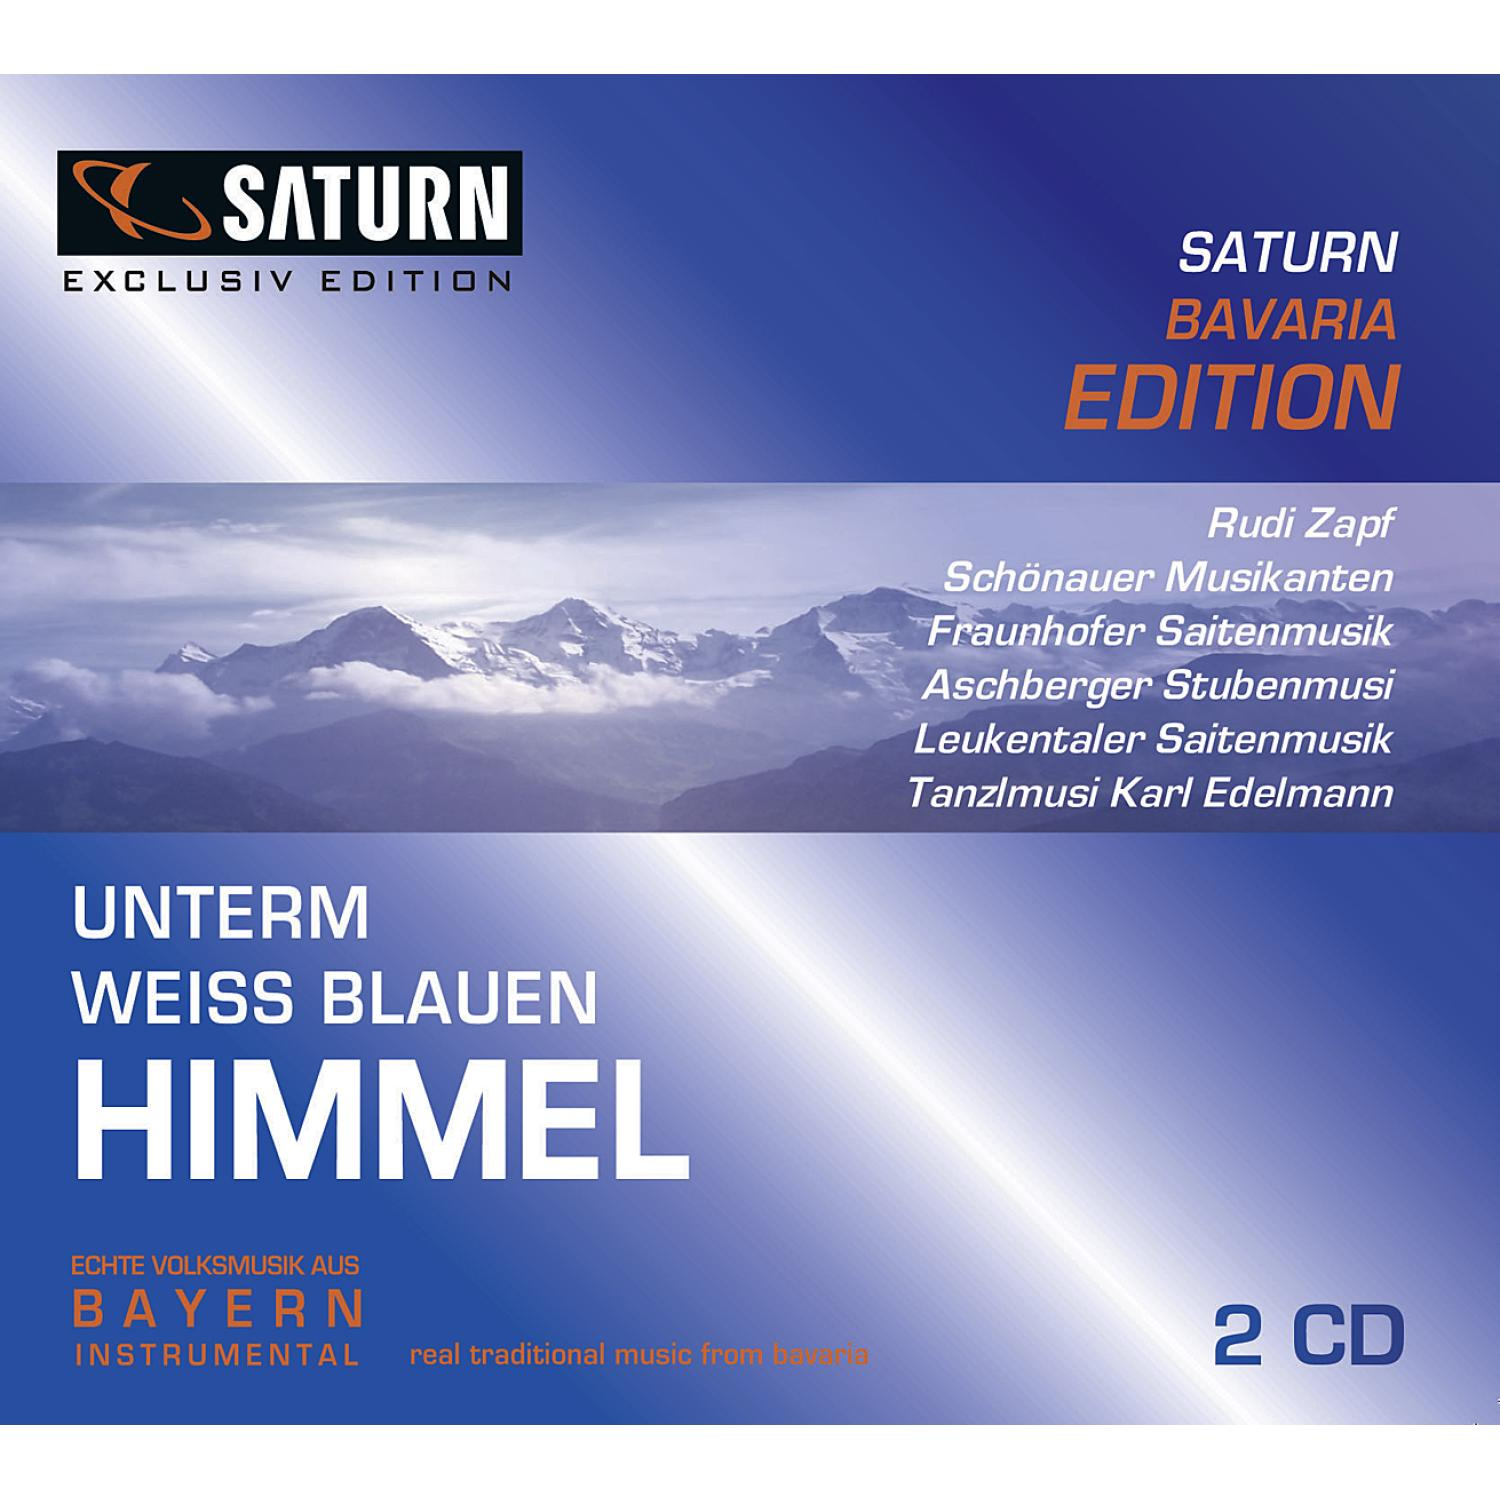 1 - Himmel Saturn weissblauen Unterm - (CD)